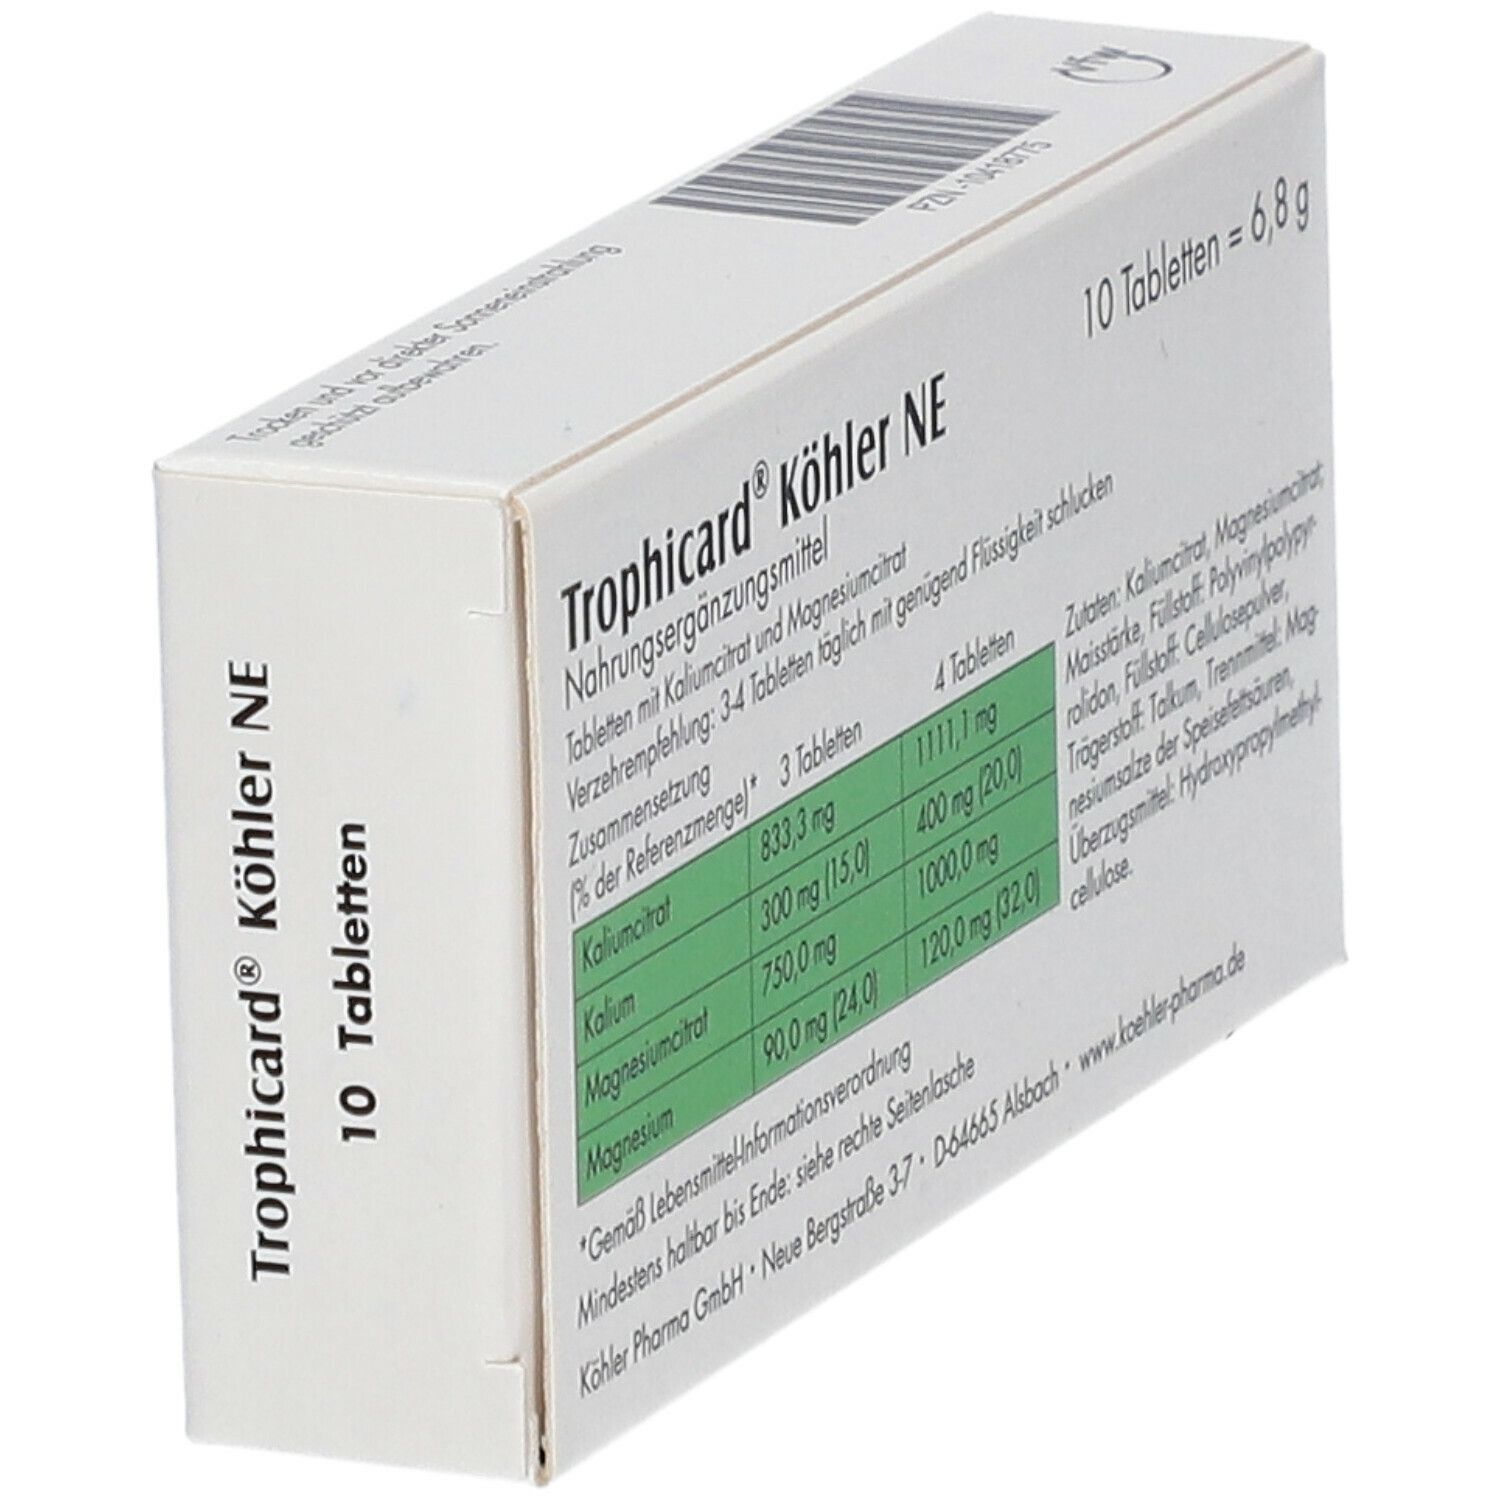 Trophicard® Köhler NE Tabletten